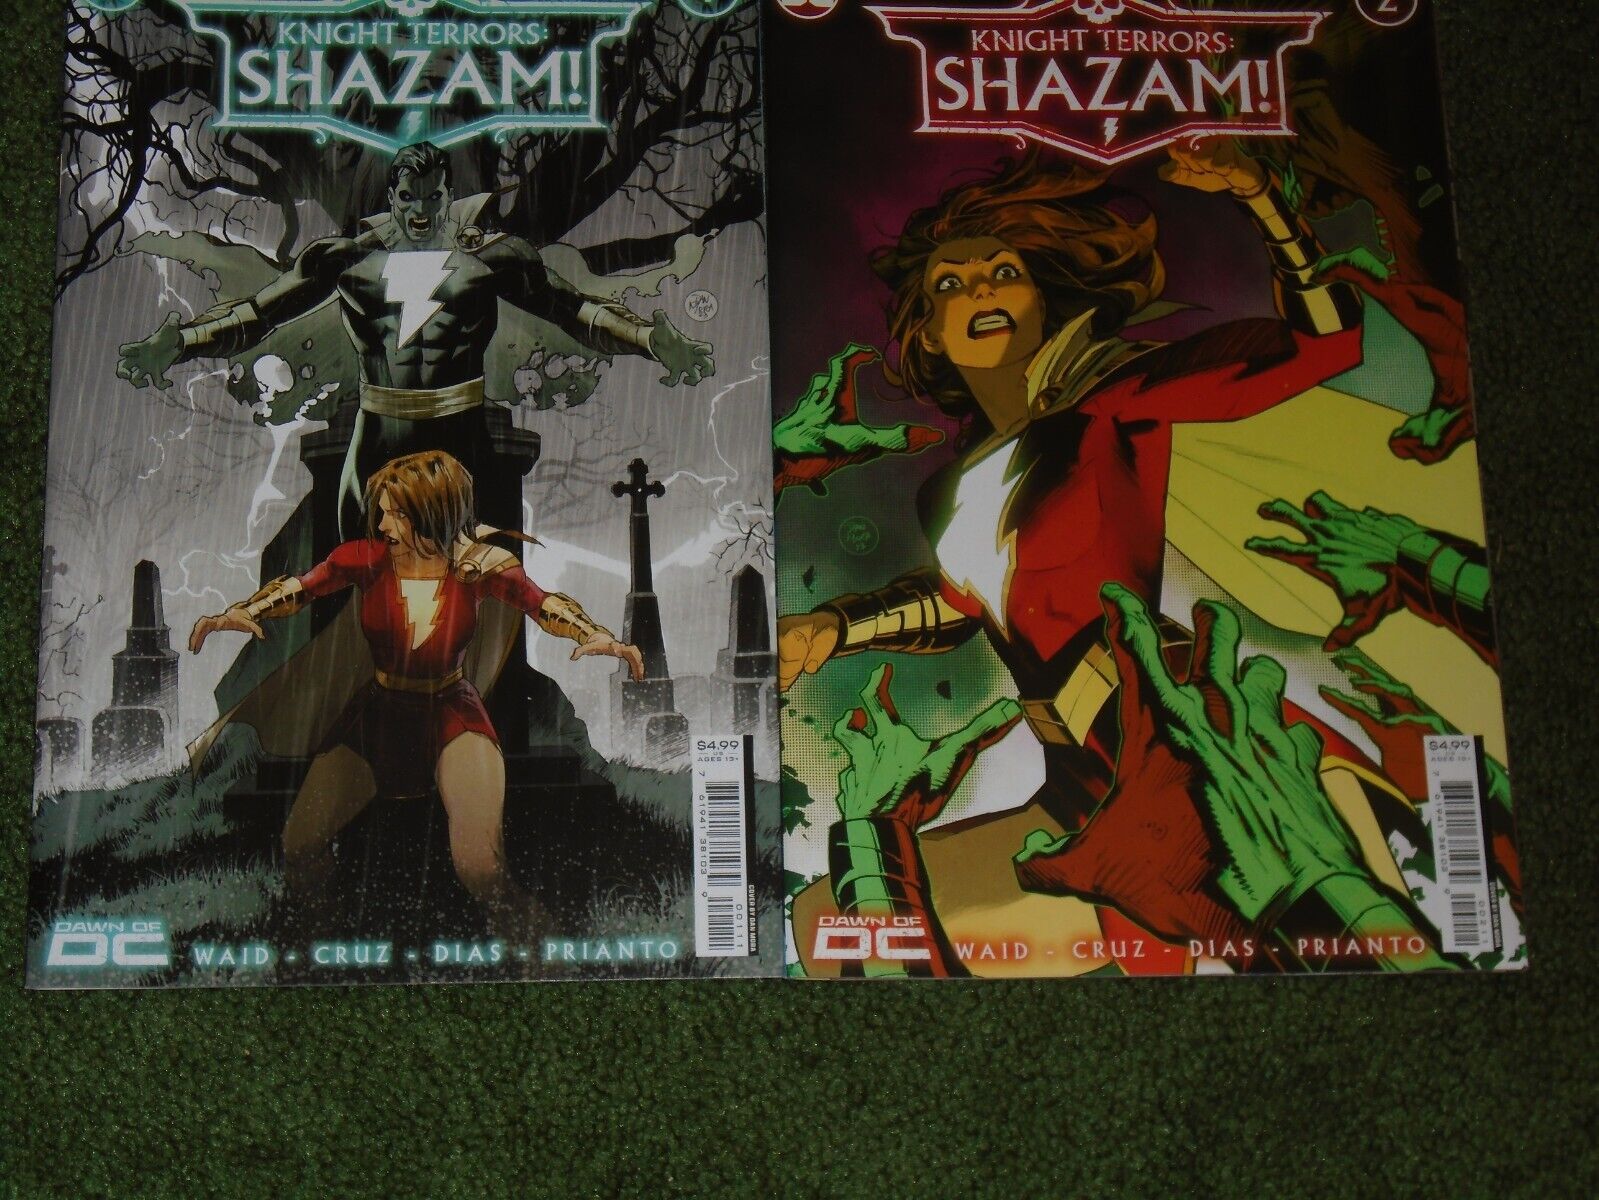 Knight Terrors Shazam!  Mary Marvel Mark Waid Insomnia Roger Cruz Dan Mora cover